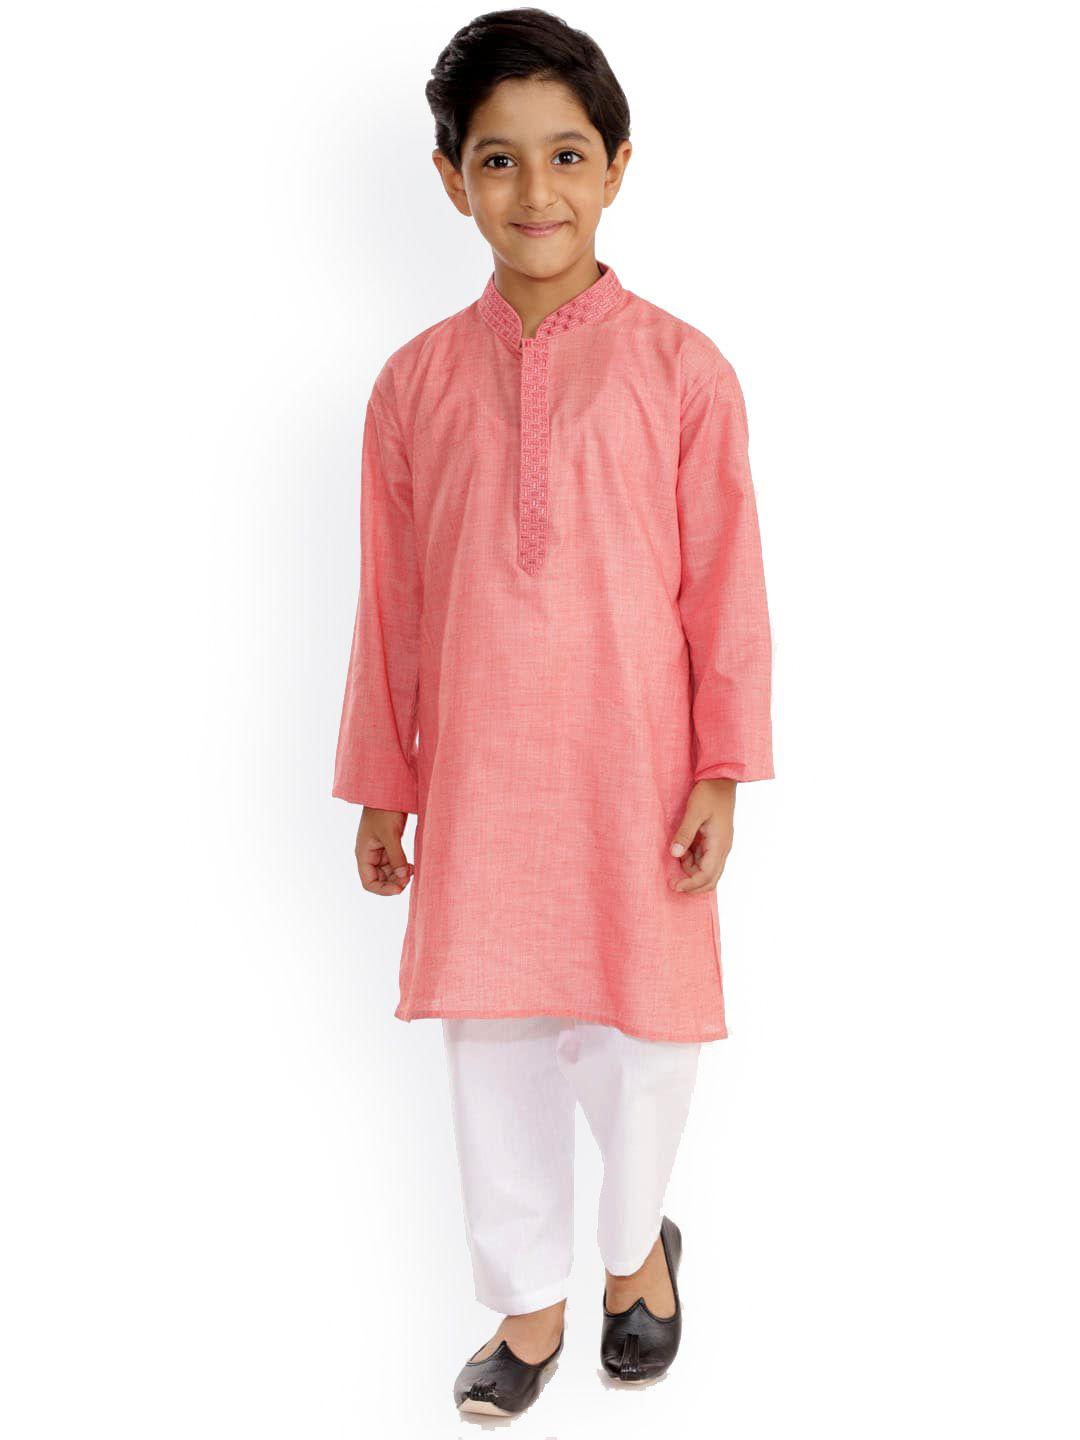 jbn creation boys peach-coloured kurta with pyjamas